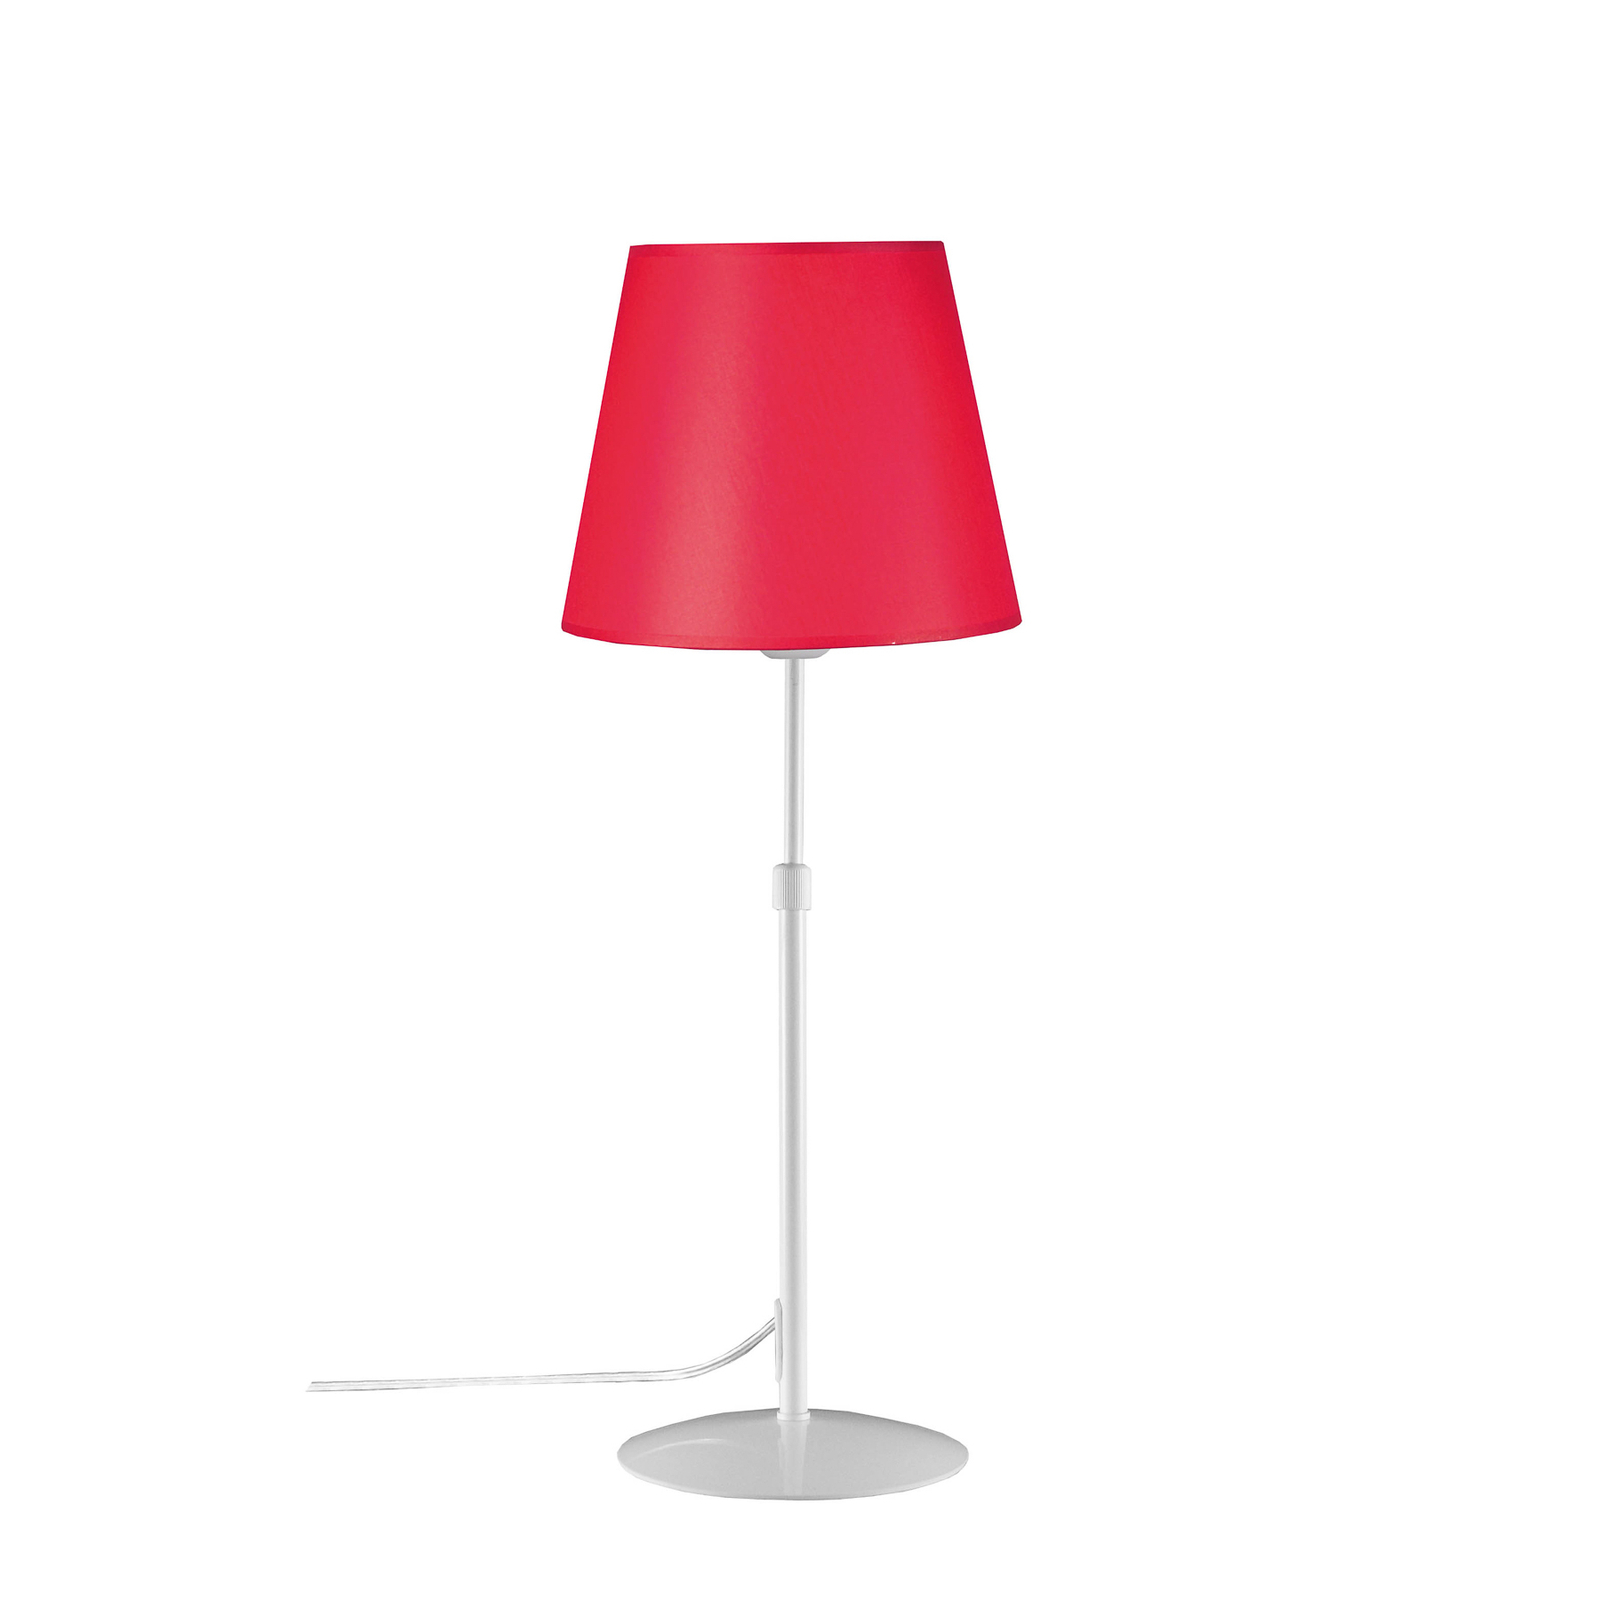 Aluminor Store stolová lampa, biela/červená